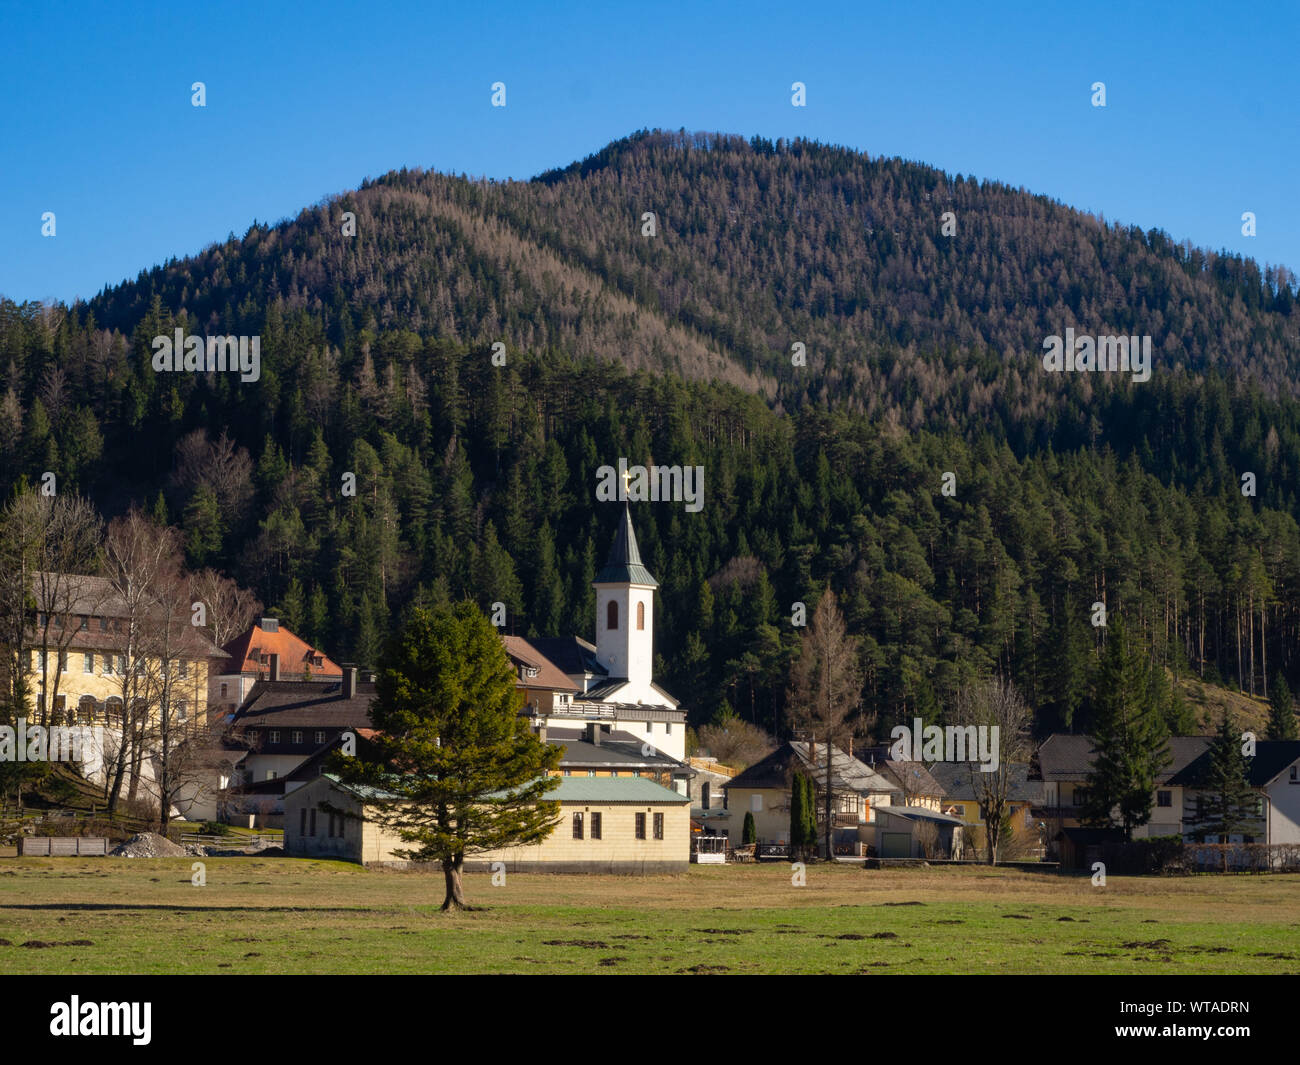 Landscape and the village Rohr im Gebirge Austria Stock Photo